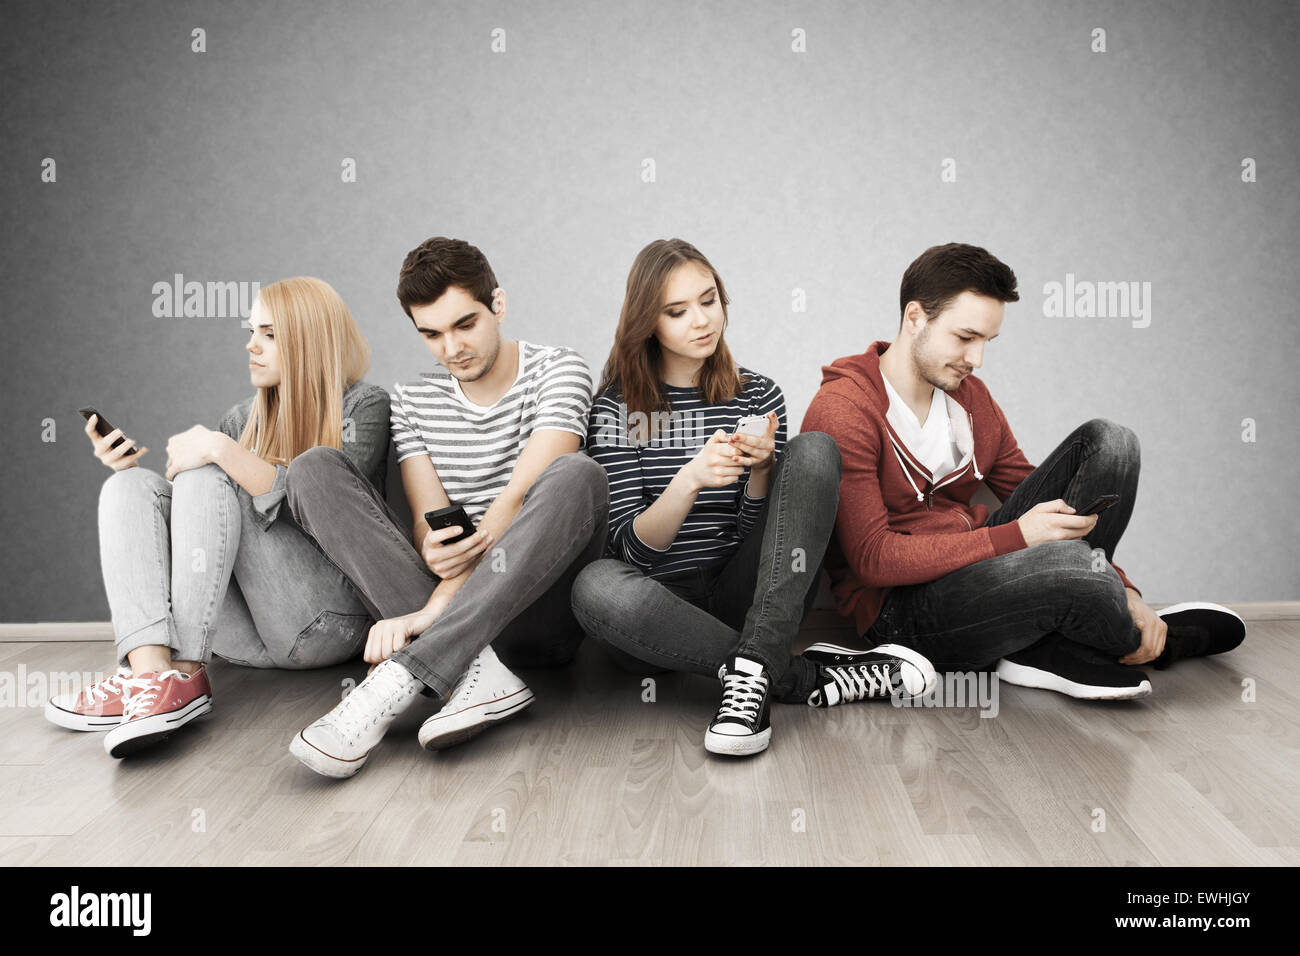 Grupo de jóvenes con smartphones Foto de stock